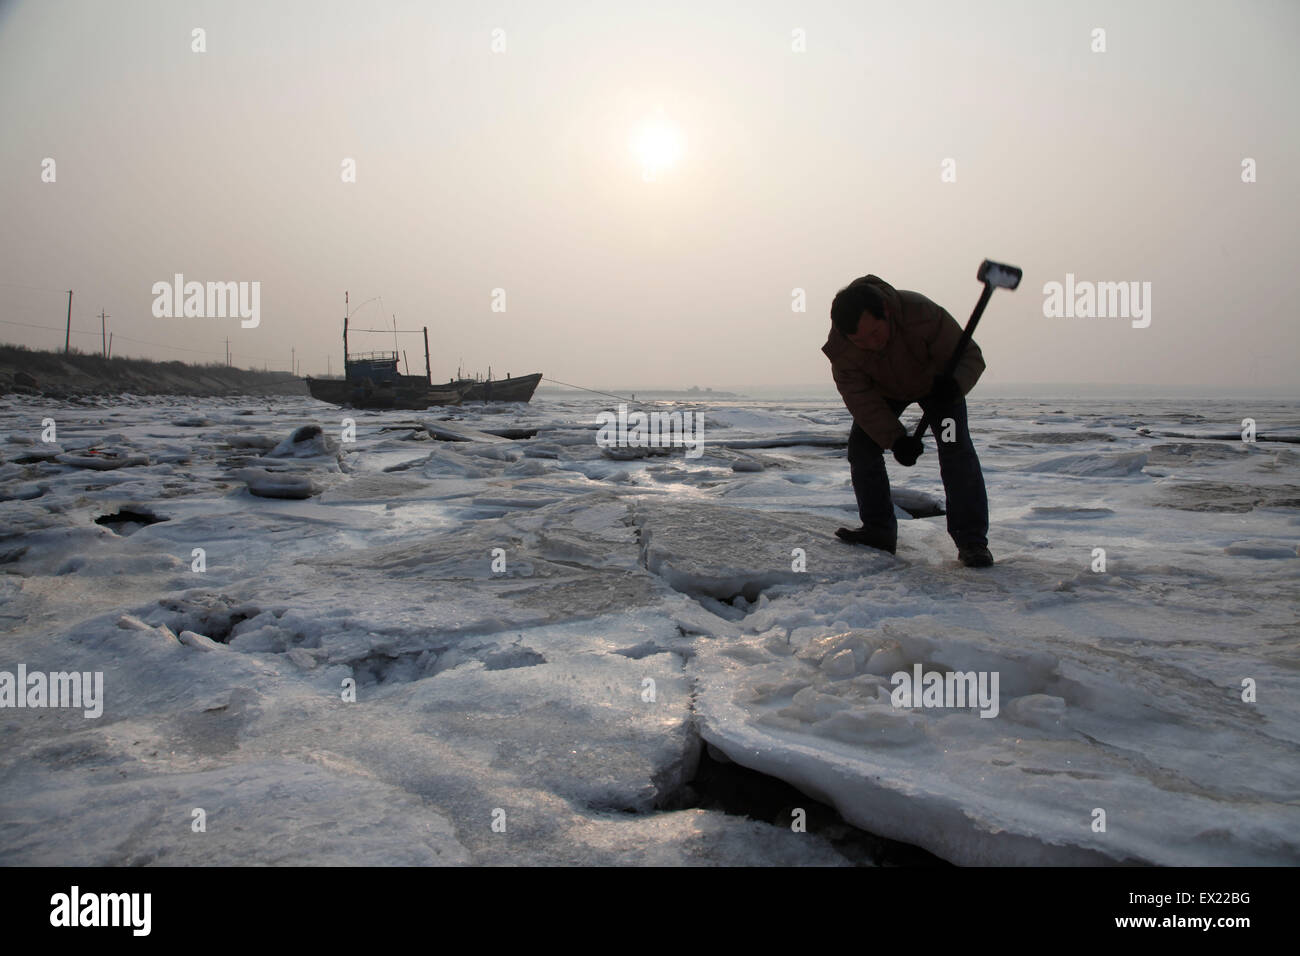 Ein Fischer bricht das Eis ein Seil festmachen eines Bootes (nicht im Bild) lösen also, halten Sie es an einem sicheren Abstand von anderen o Stockfoto